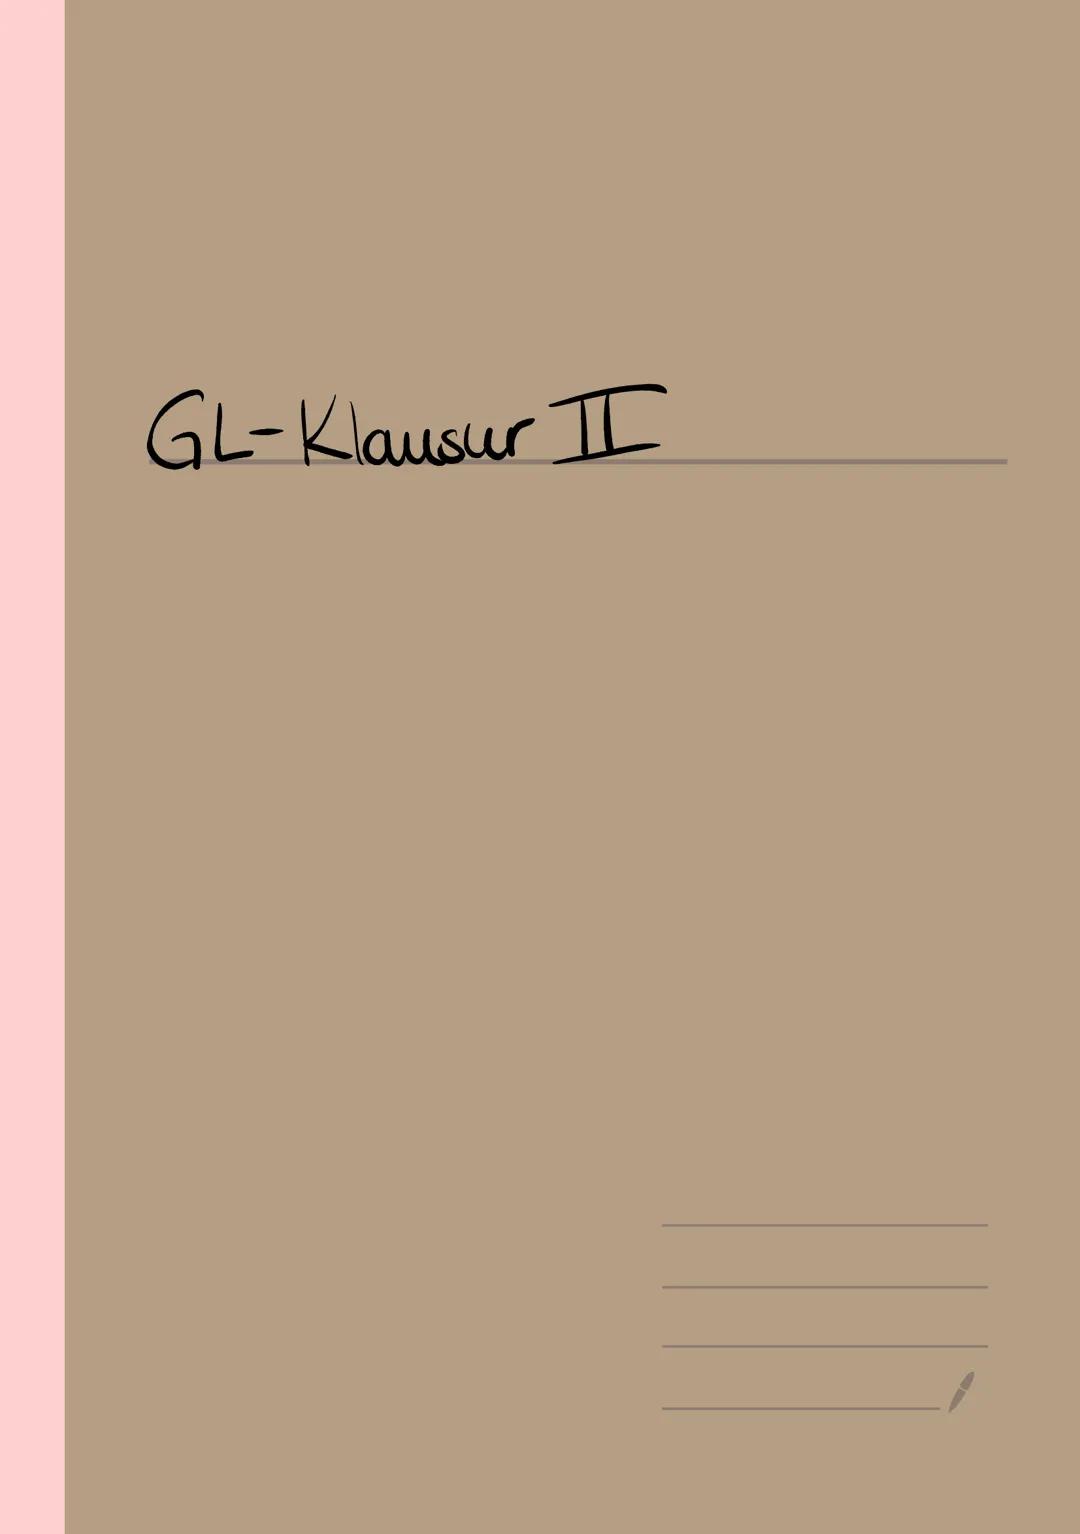 GL-Klausur II Segunda E
Kann-Liste BG12
2. Klausur Q1
Themengebiet: Hormoneller Regelkreis, Stressreaktion, Antagonistenprinzip
Ich kann...
